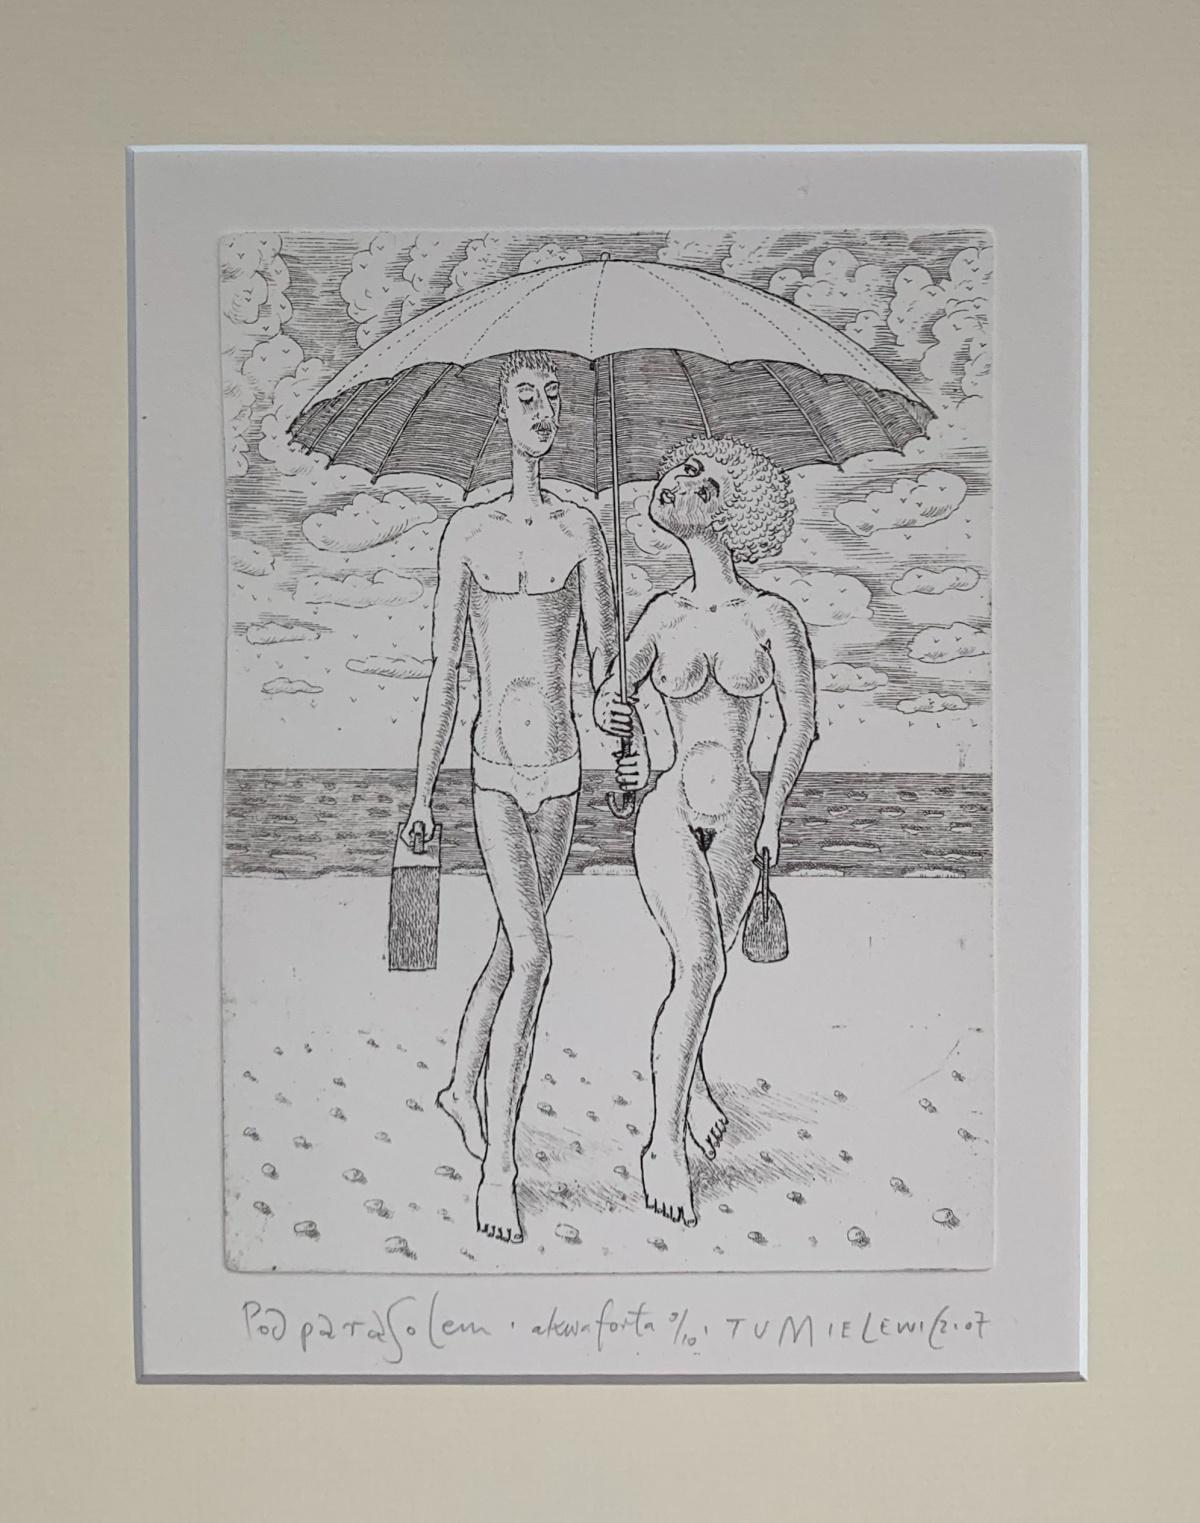 Sous un parapluie - Imprimé figuratif contemporain d'une gravure, nu, noir et blanc - Print de Czeslaw Tumielewicz